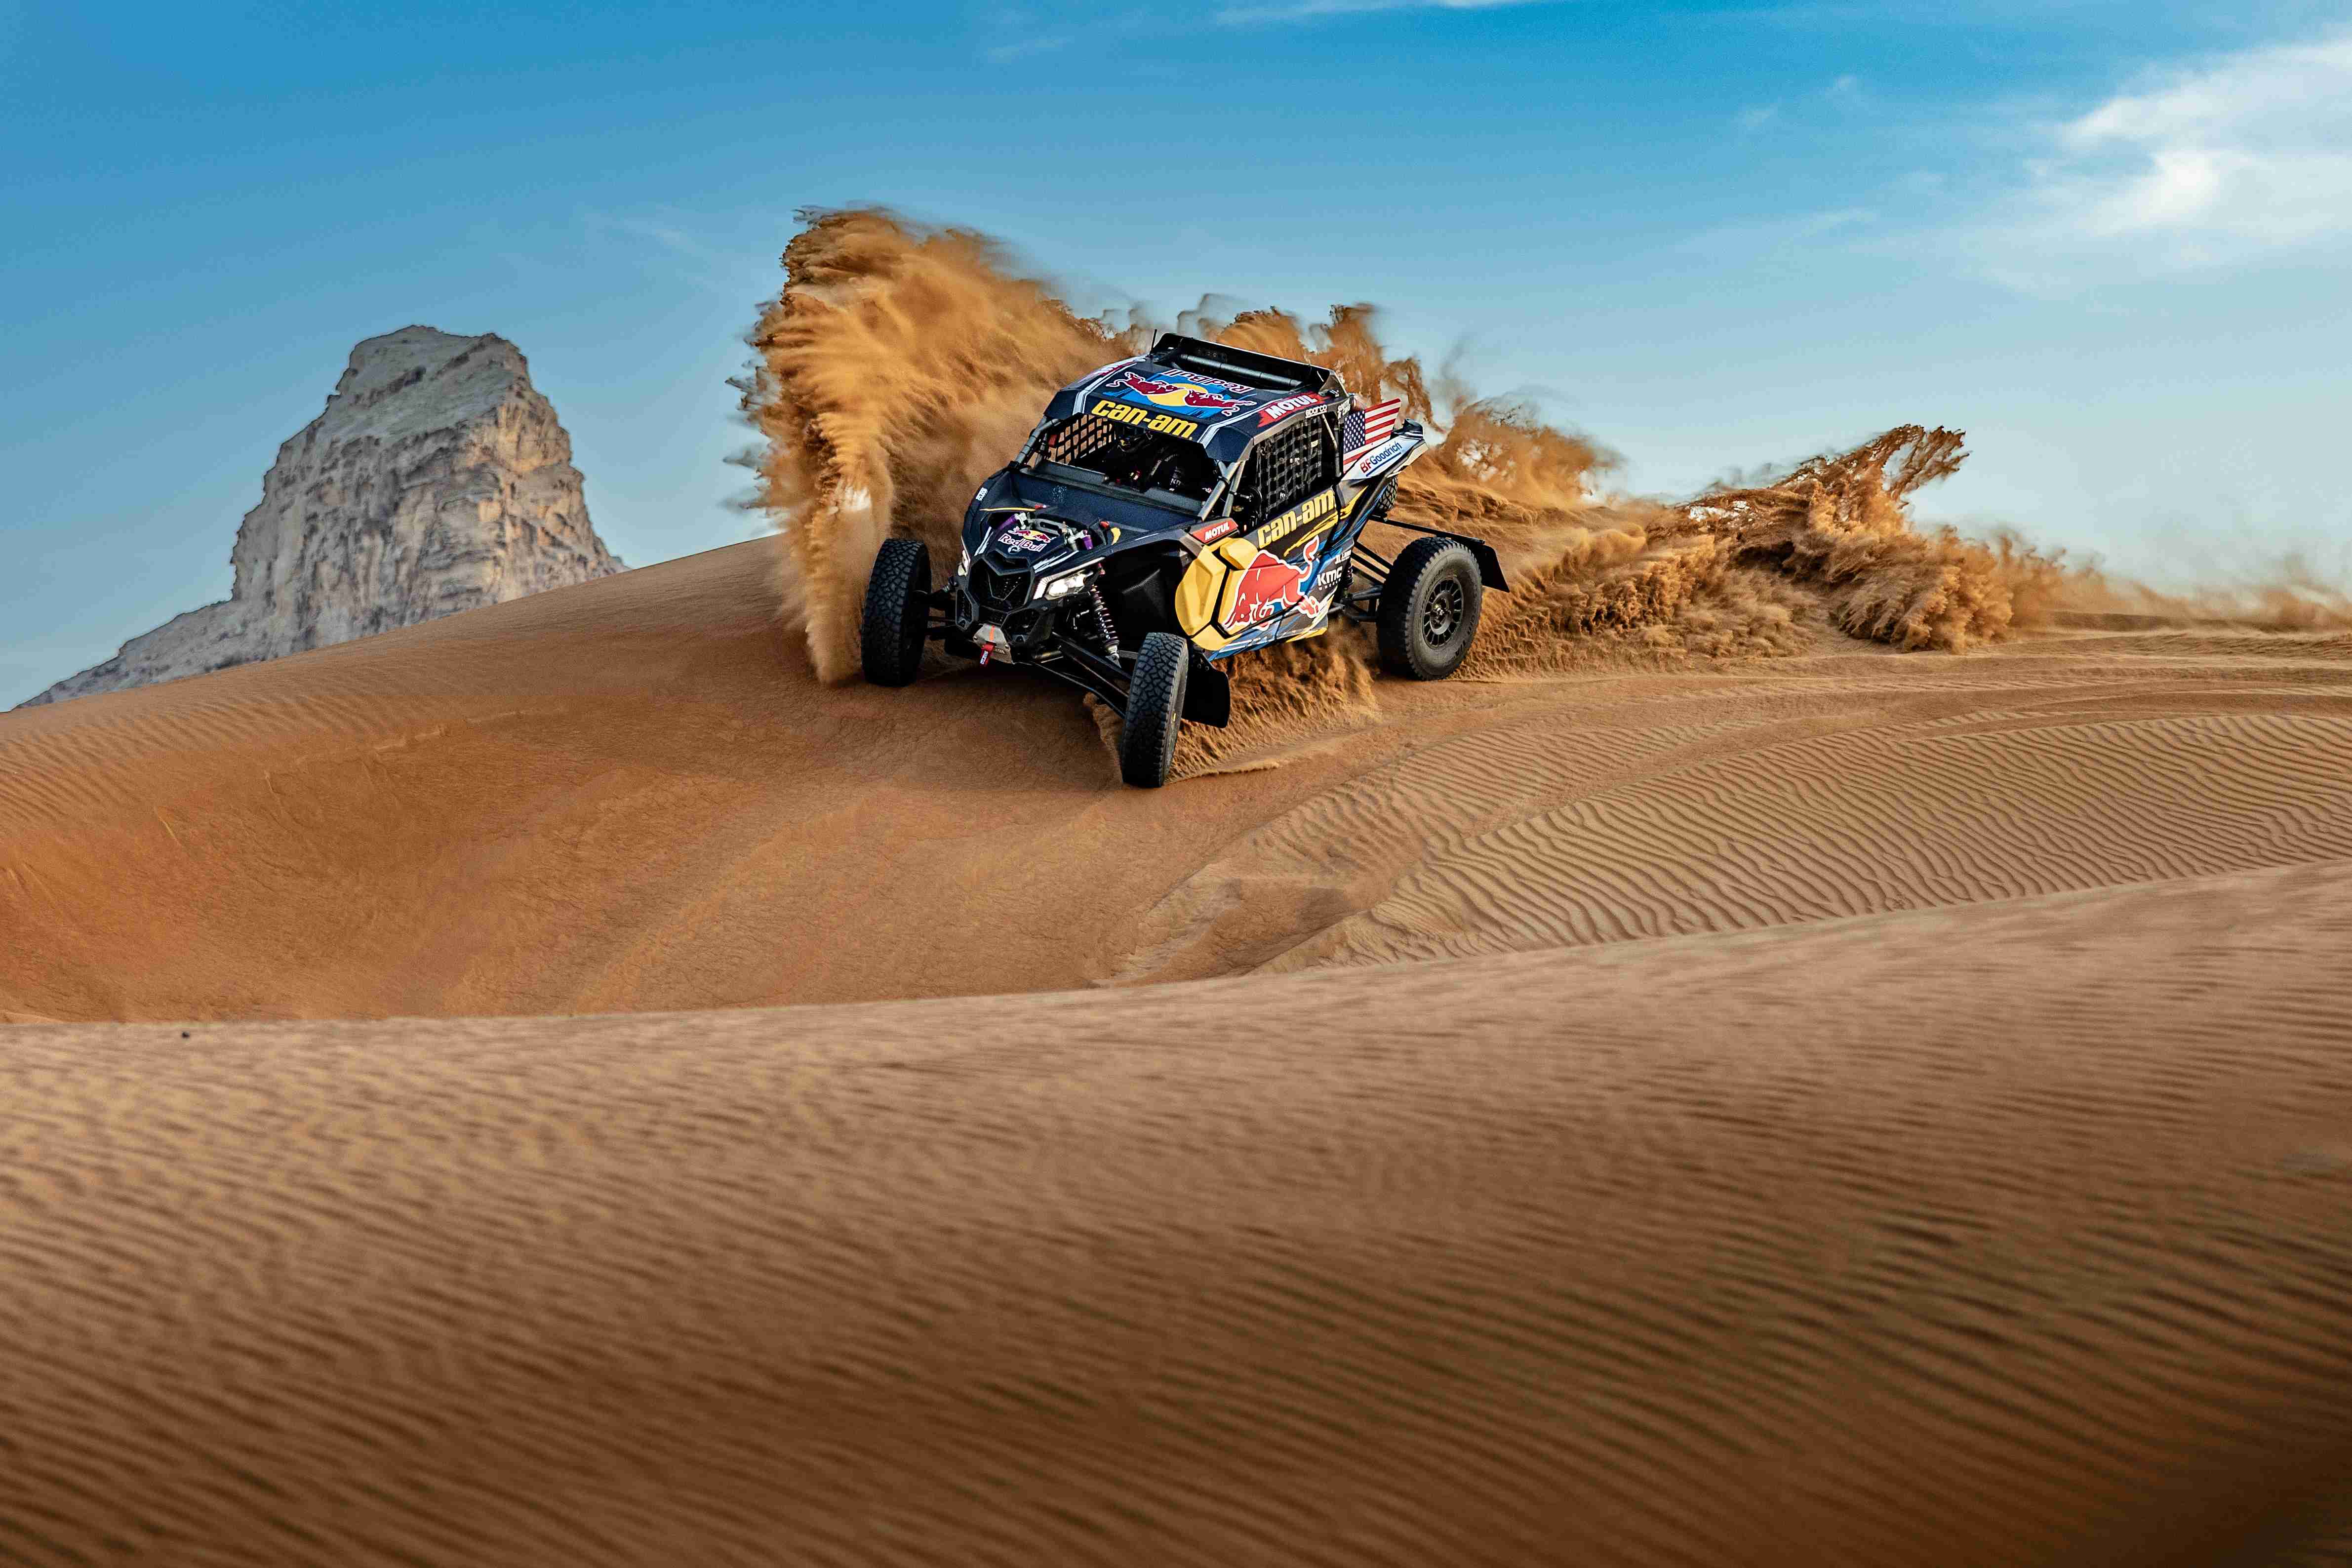 Maverick riding on a sand dune in the desert